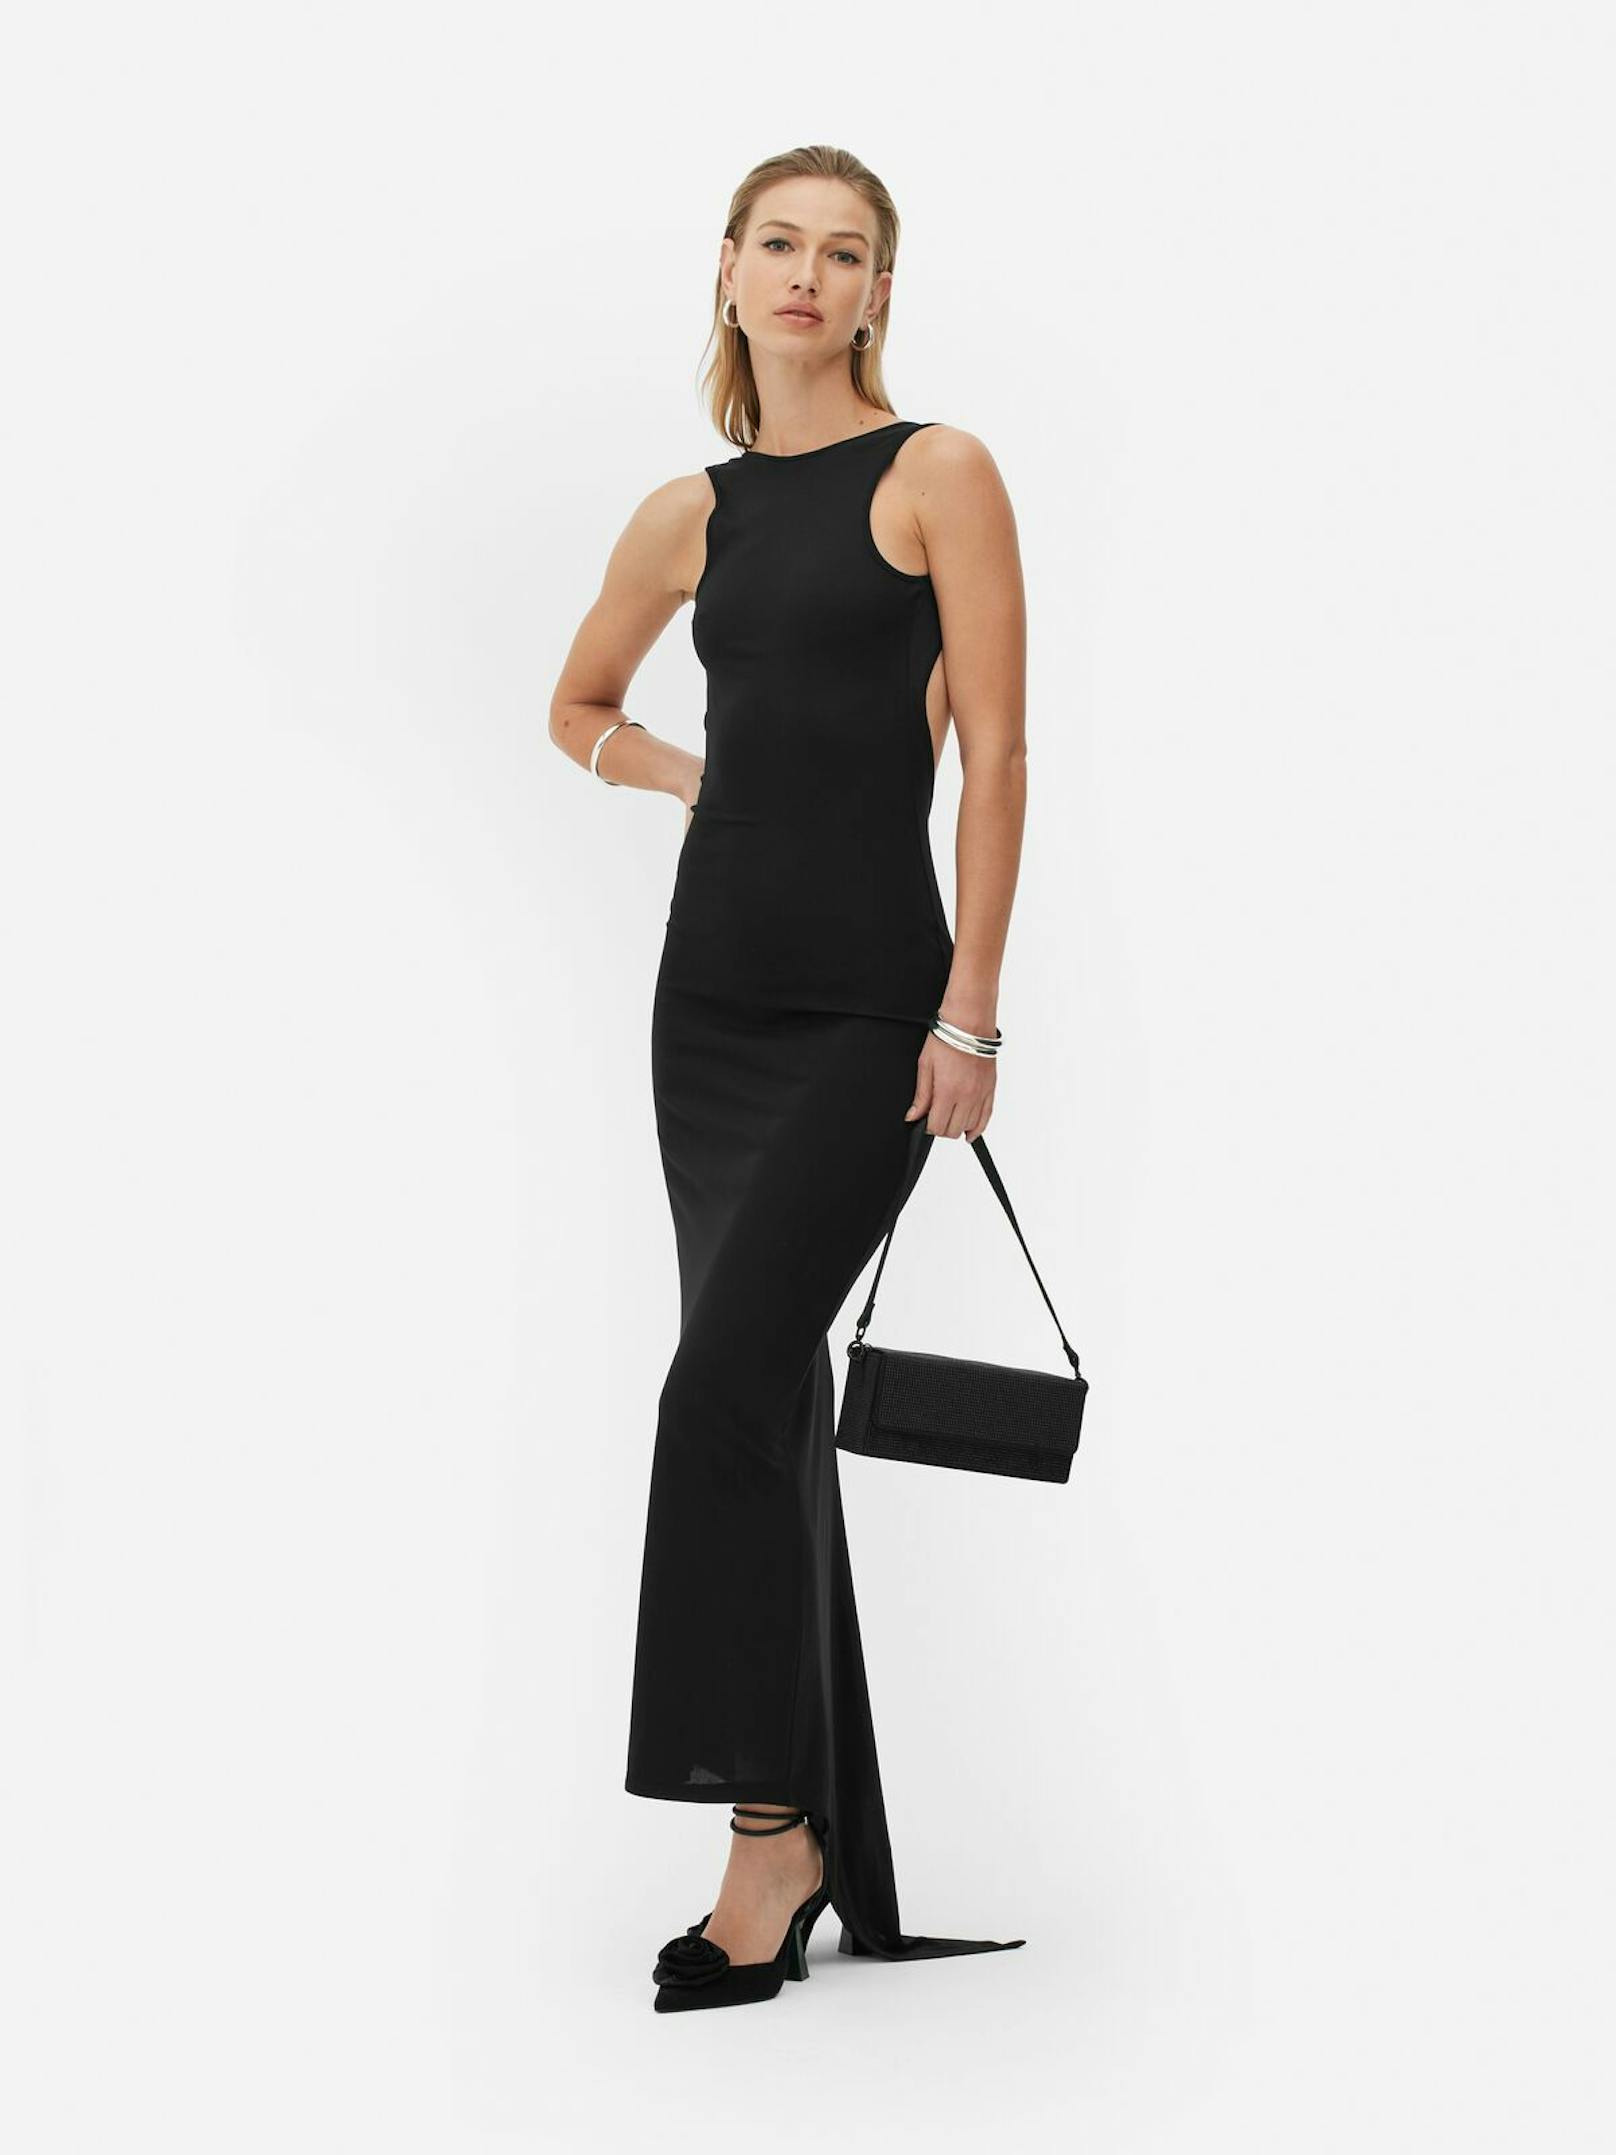 Ein elegantes schwarzes Kleid, das auch im Sommer auf jeder Party gut aussieht. Der Reinerlös des Kleides wird von Primark an die britische Krebsforschung gespendet.